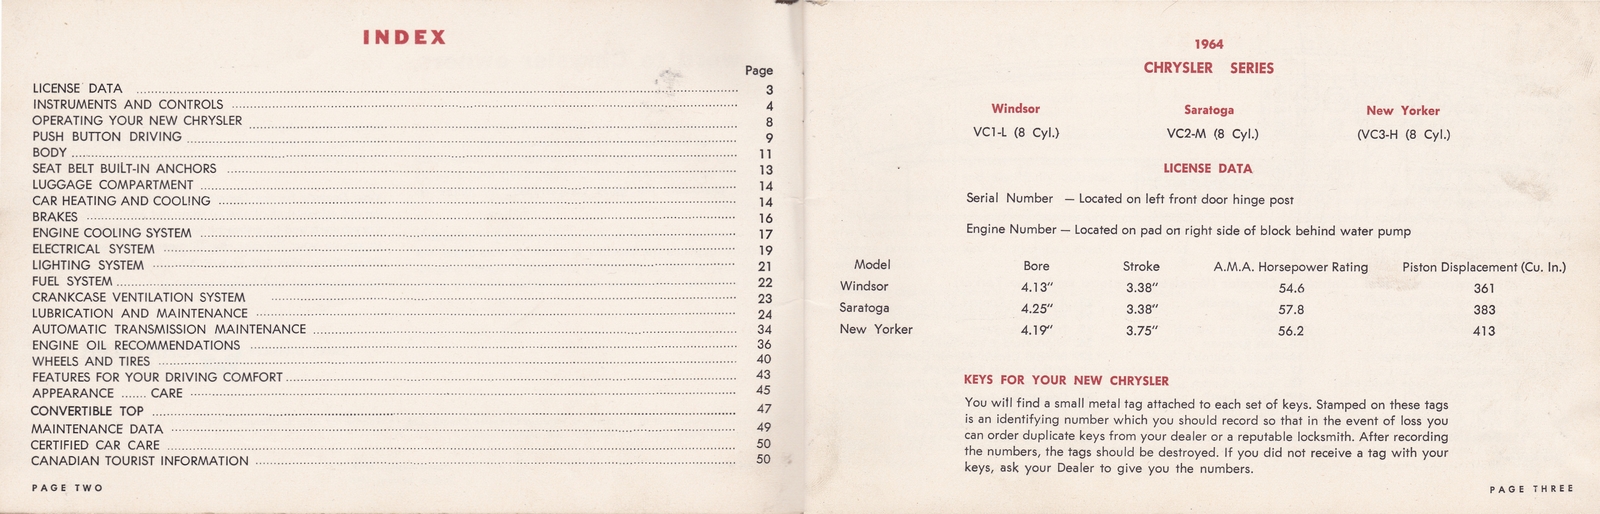 n_1964 Chrysler Owner's Manual (Cdn)-02-03.jpg